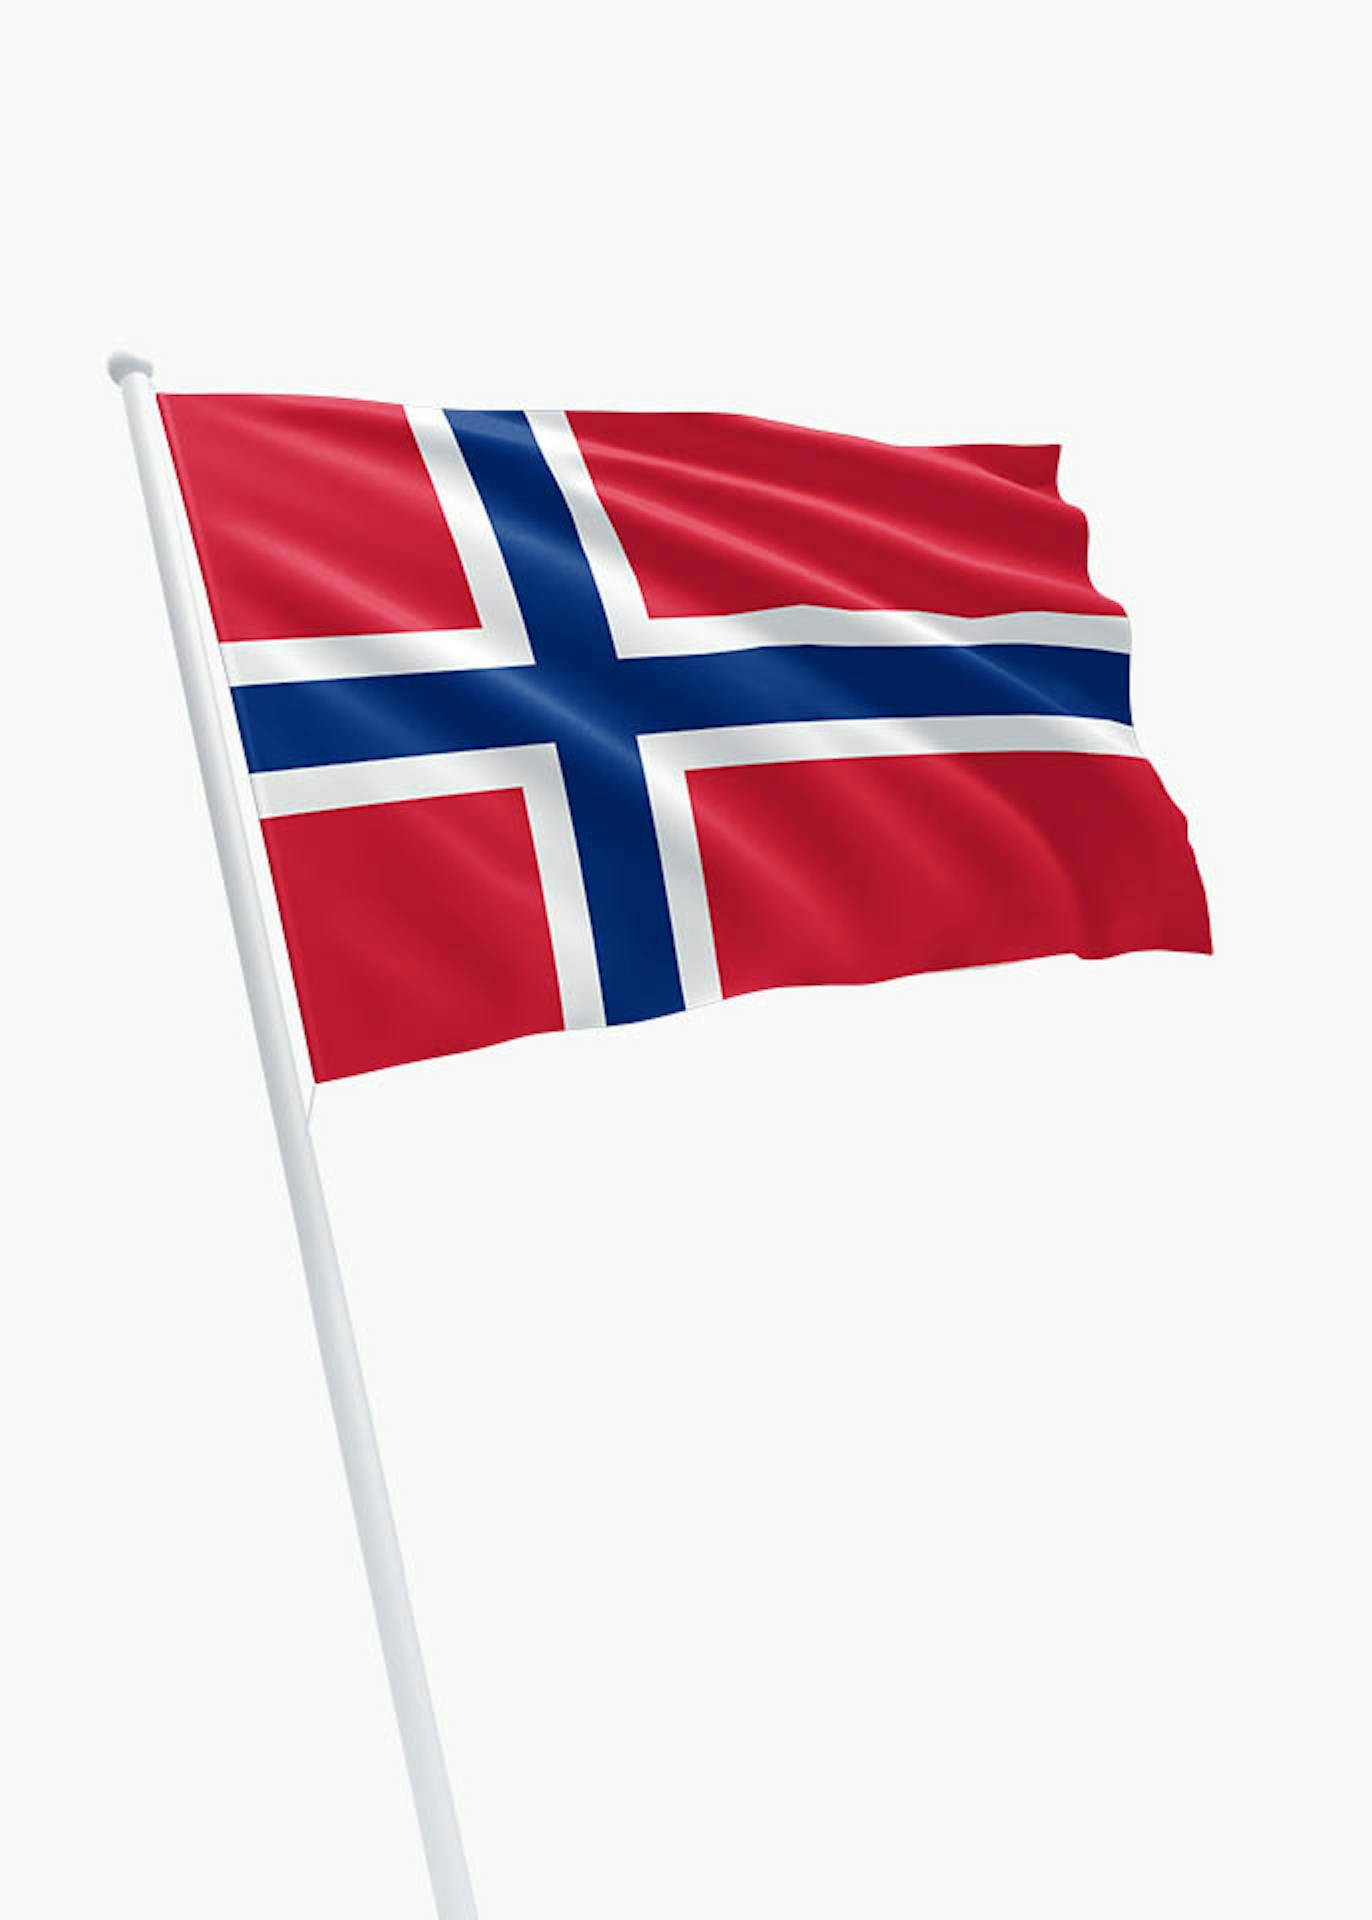 Post impressionisme Vooruitzicht Beweren Noorse vlag kopen? Dé specialist in vlaggen! - DVC